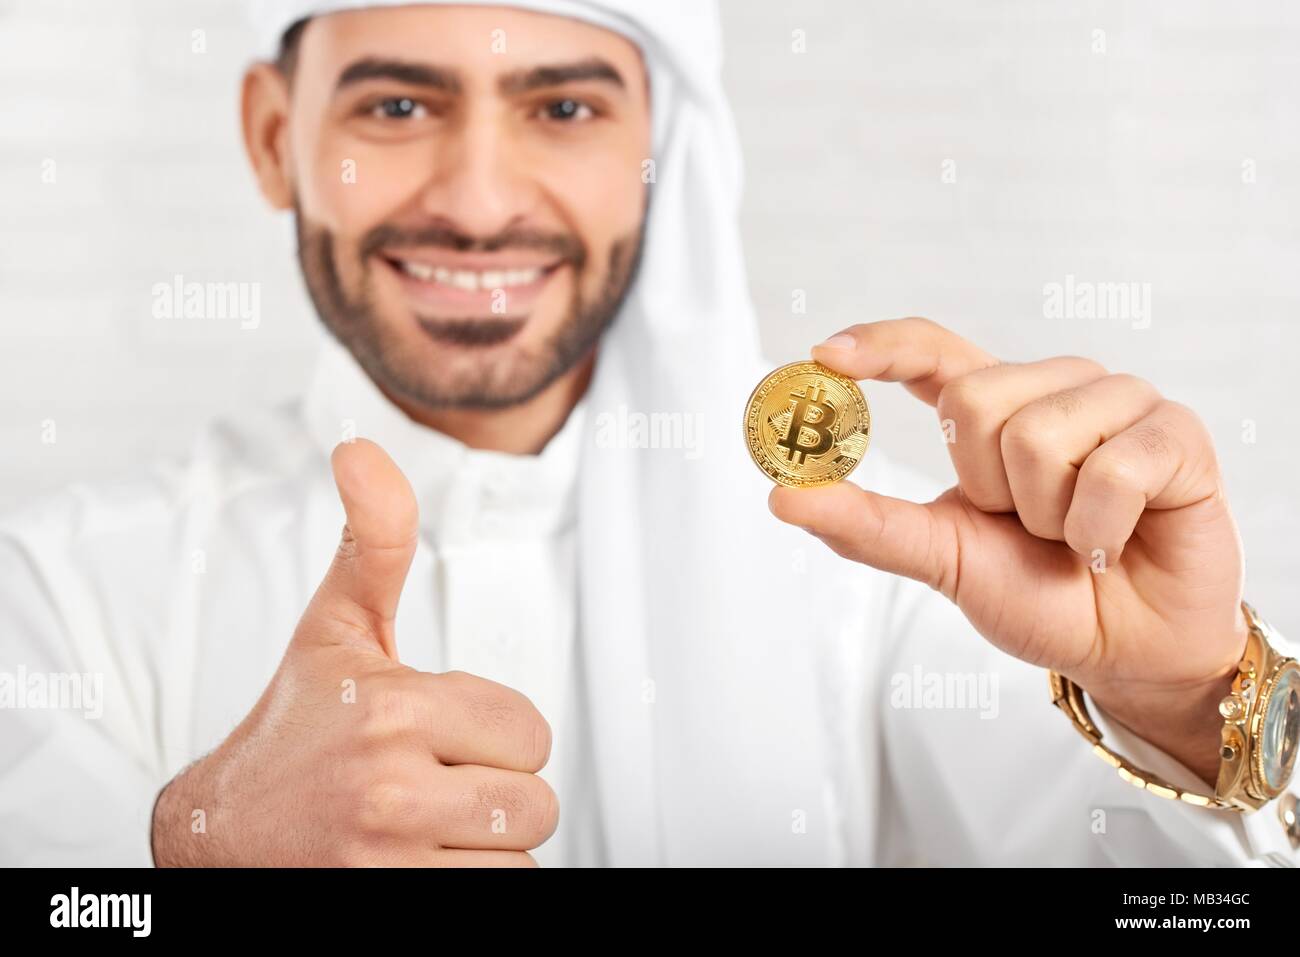 Studio Portrait of a smiling woman arabe et bitcoin permet a l'air très heureux, debout sur fond blanc. Il porte le costume traditionnel arabe blanc,golden watch et les boutons de manchette. Banque D'Images